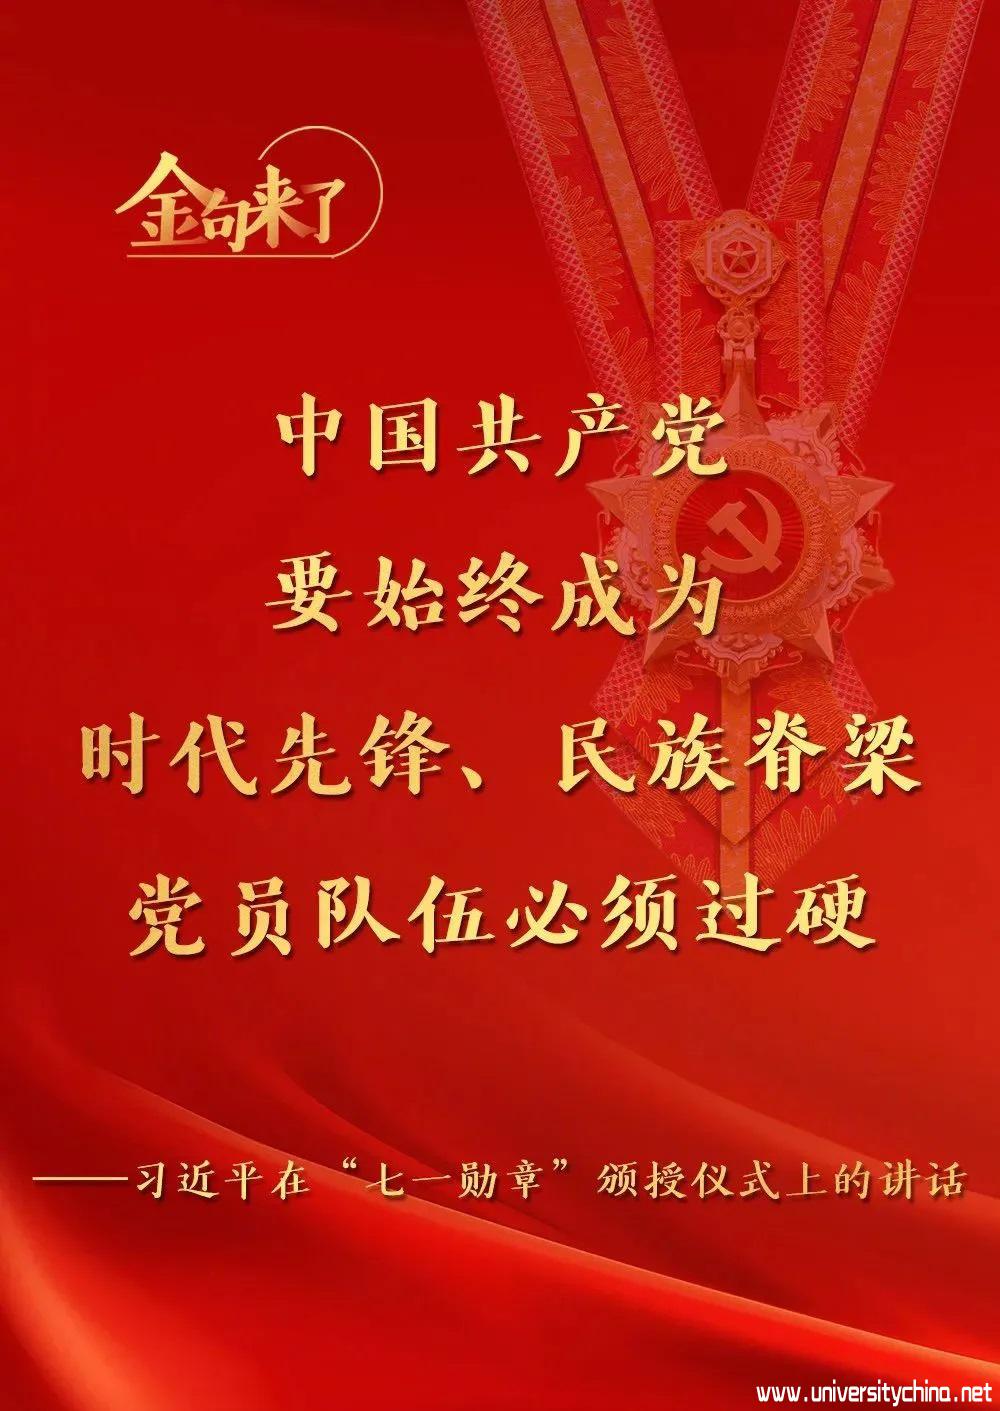 金句来了，习近平在庆祝中国共产党成立100周年“七一勋章”颁授仪式上发表重要讲话